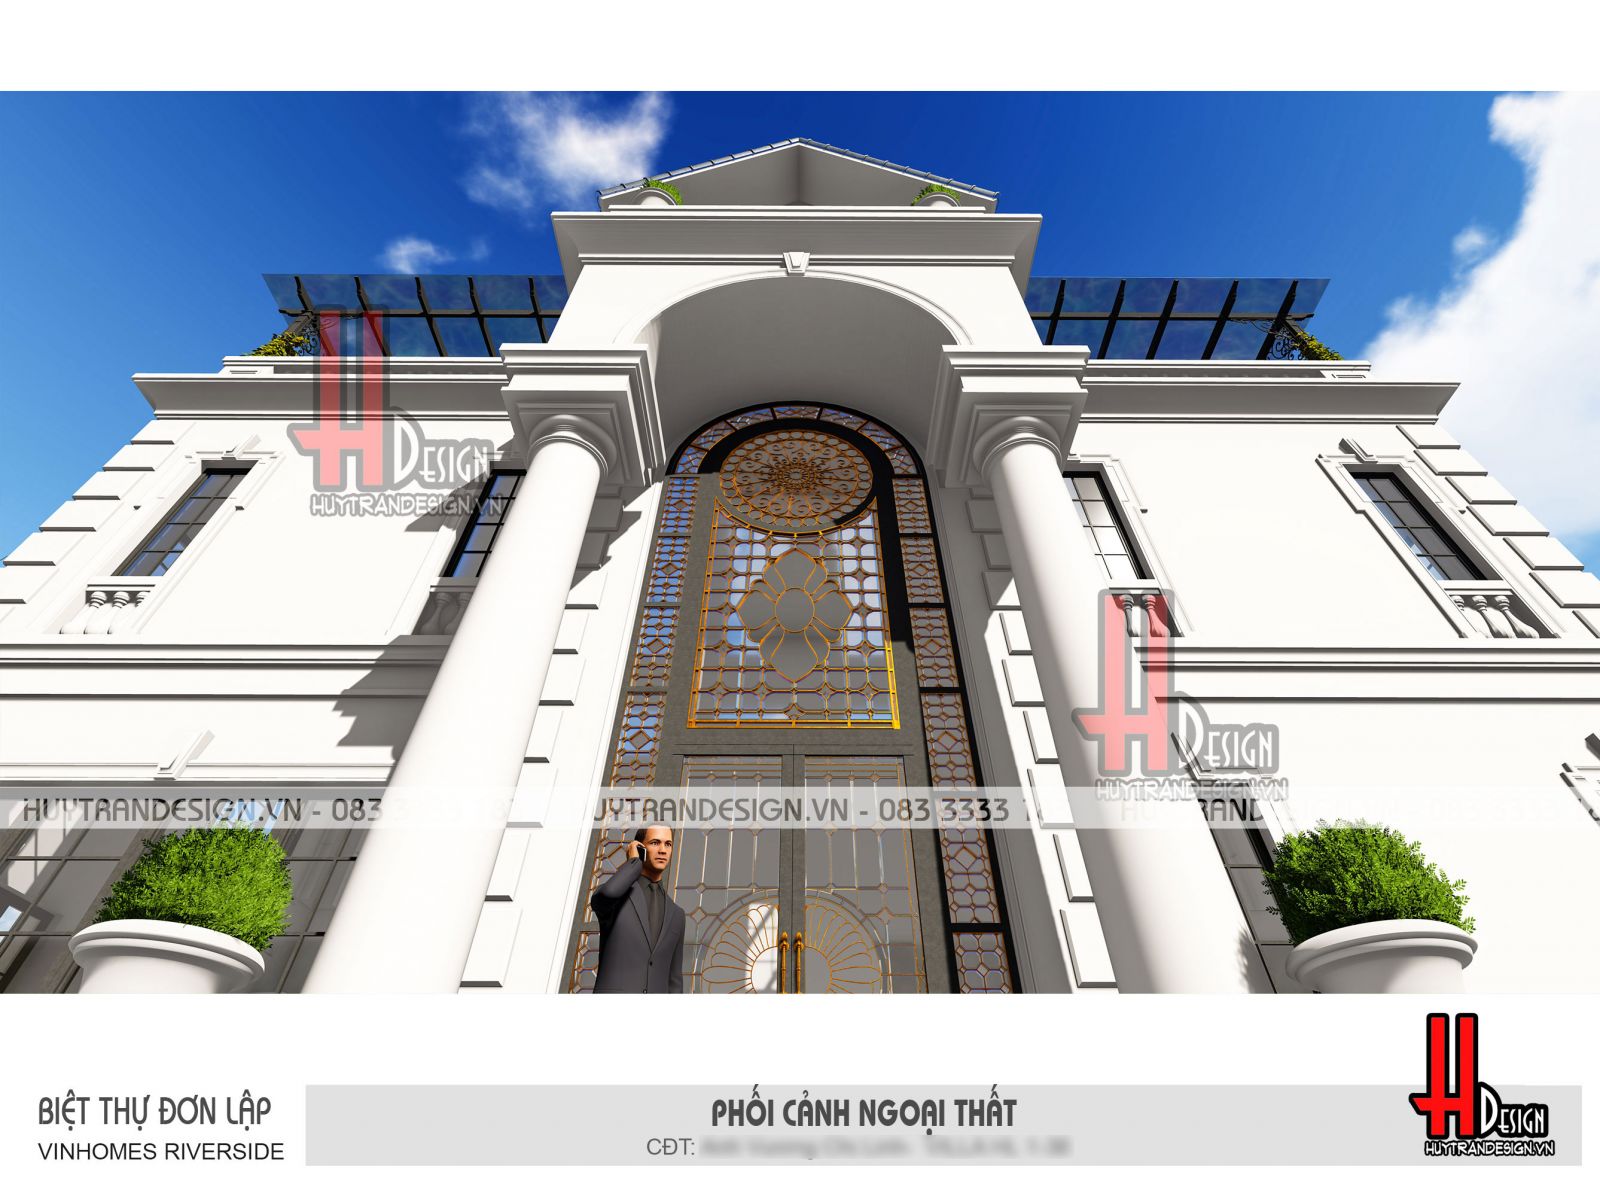 Mẫu thiết kế nhà 3 tầng đẹp - Huytrandesign tư vấn, thiết kế, thi công, sửa chữa nhà đẹp tại Long Biên, Hà Nội - v3